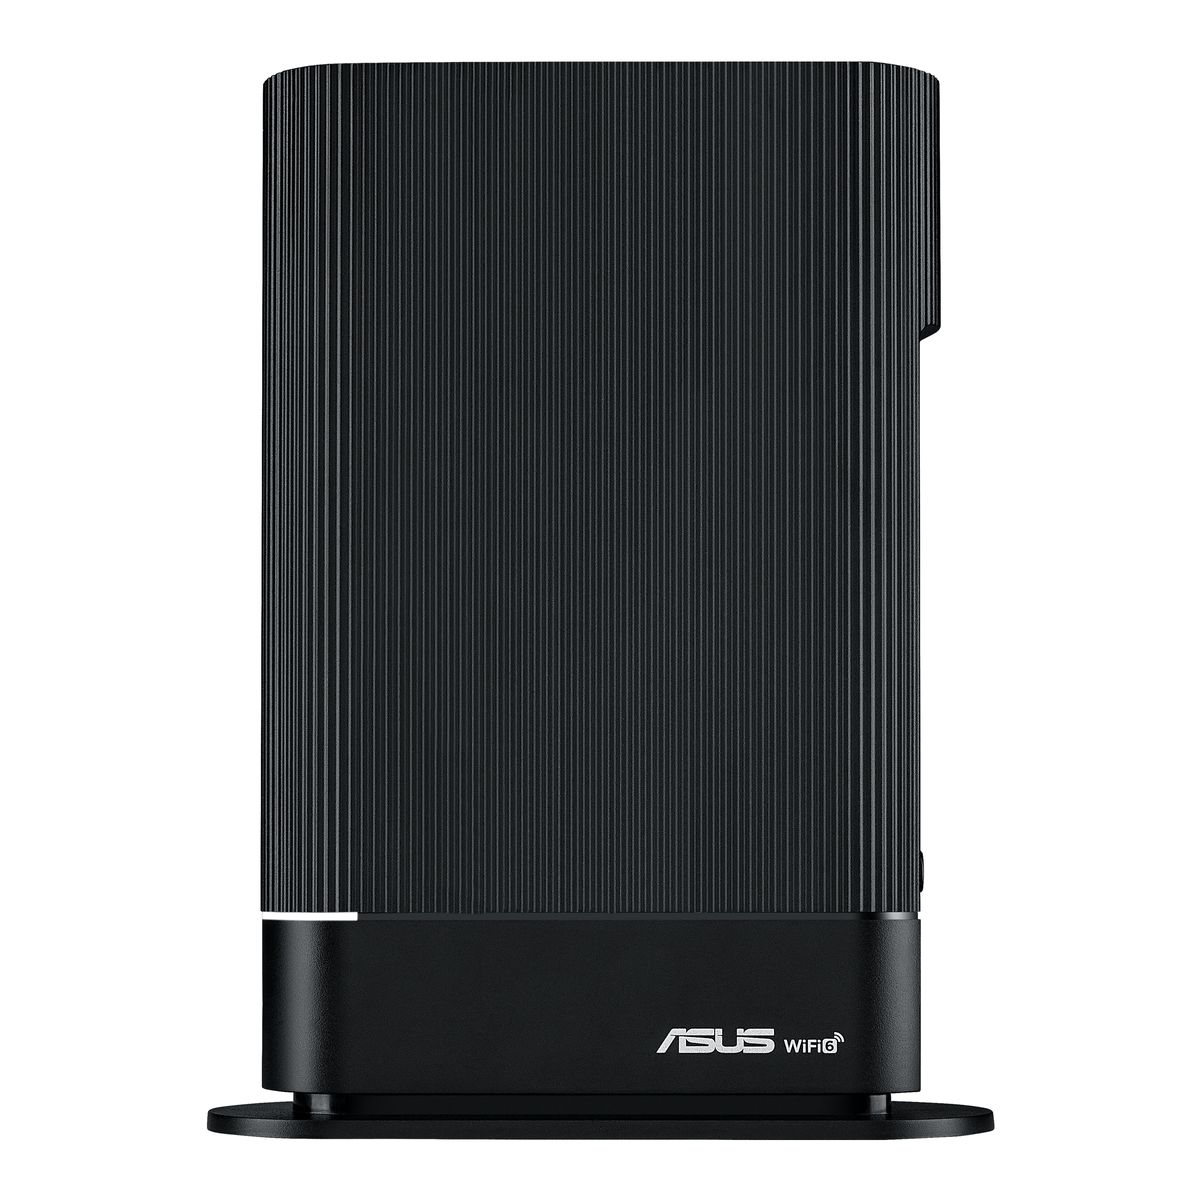 ASUS RT-AX59U AX4200 AiMesh kombinierbarer Router (Tethering als 4G und 5G Router-Ersatz, WiFi 6, AiProtection Pro, Kindersicherung, 160 MHz Bandbreite, USB 3.2 Gen 1 Anschluss, VPN-Funktionen) 4.200 Mbit/s 1x WAN + 3x LAN + 1x USB 3.2 + 1x